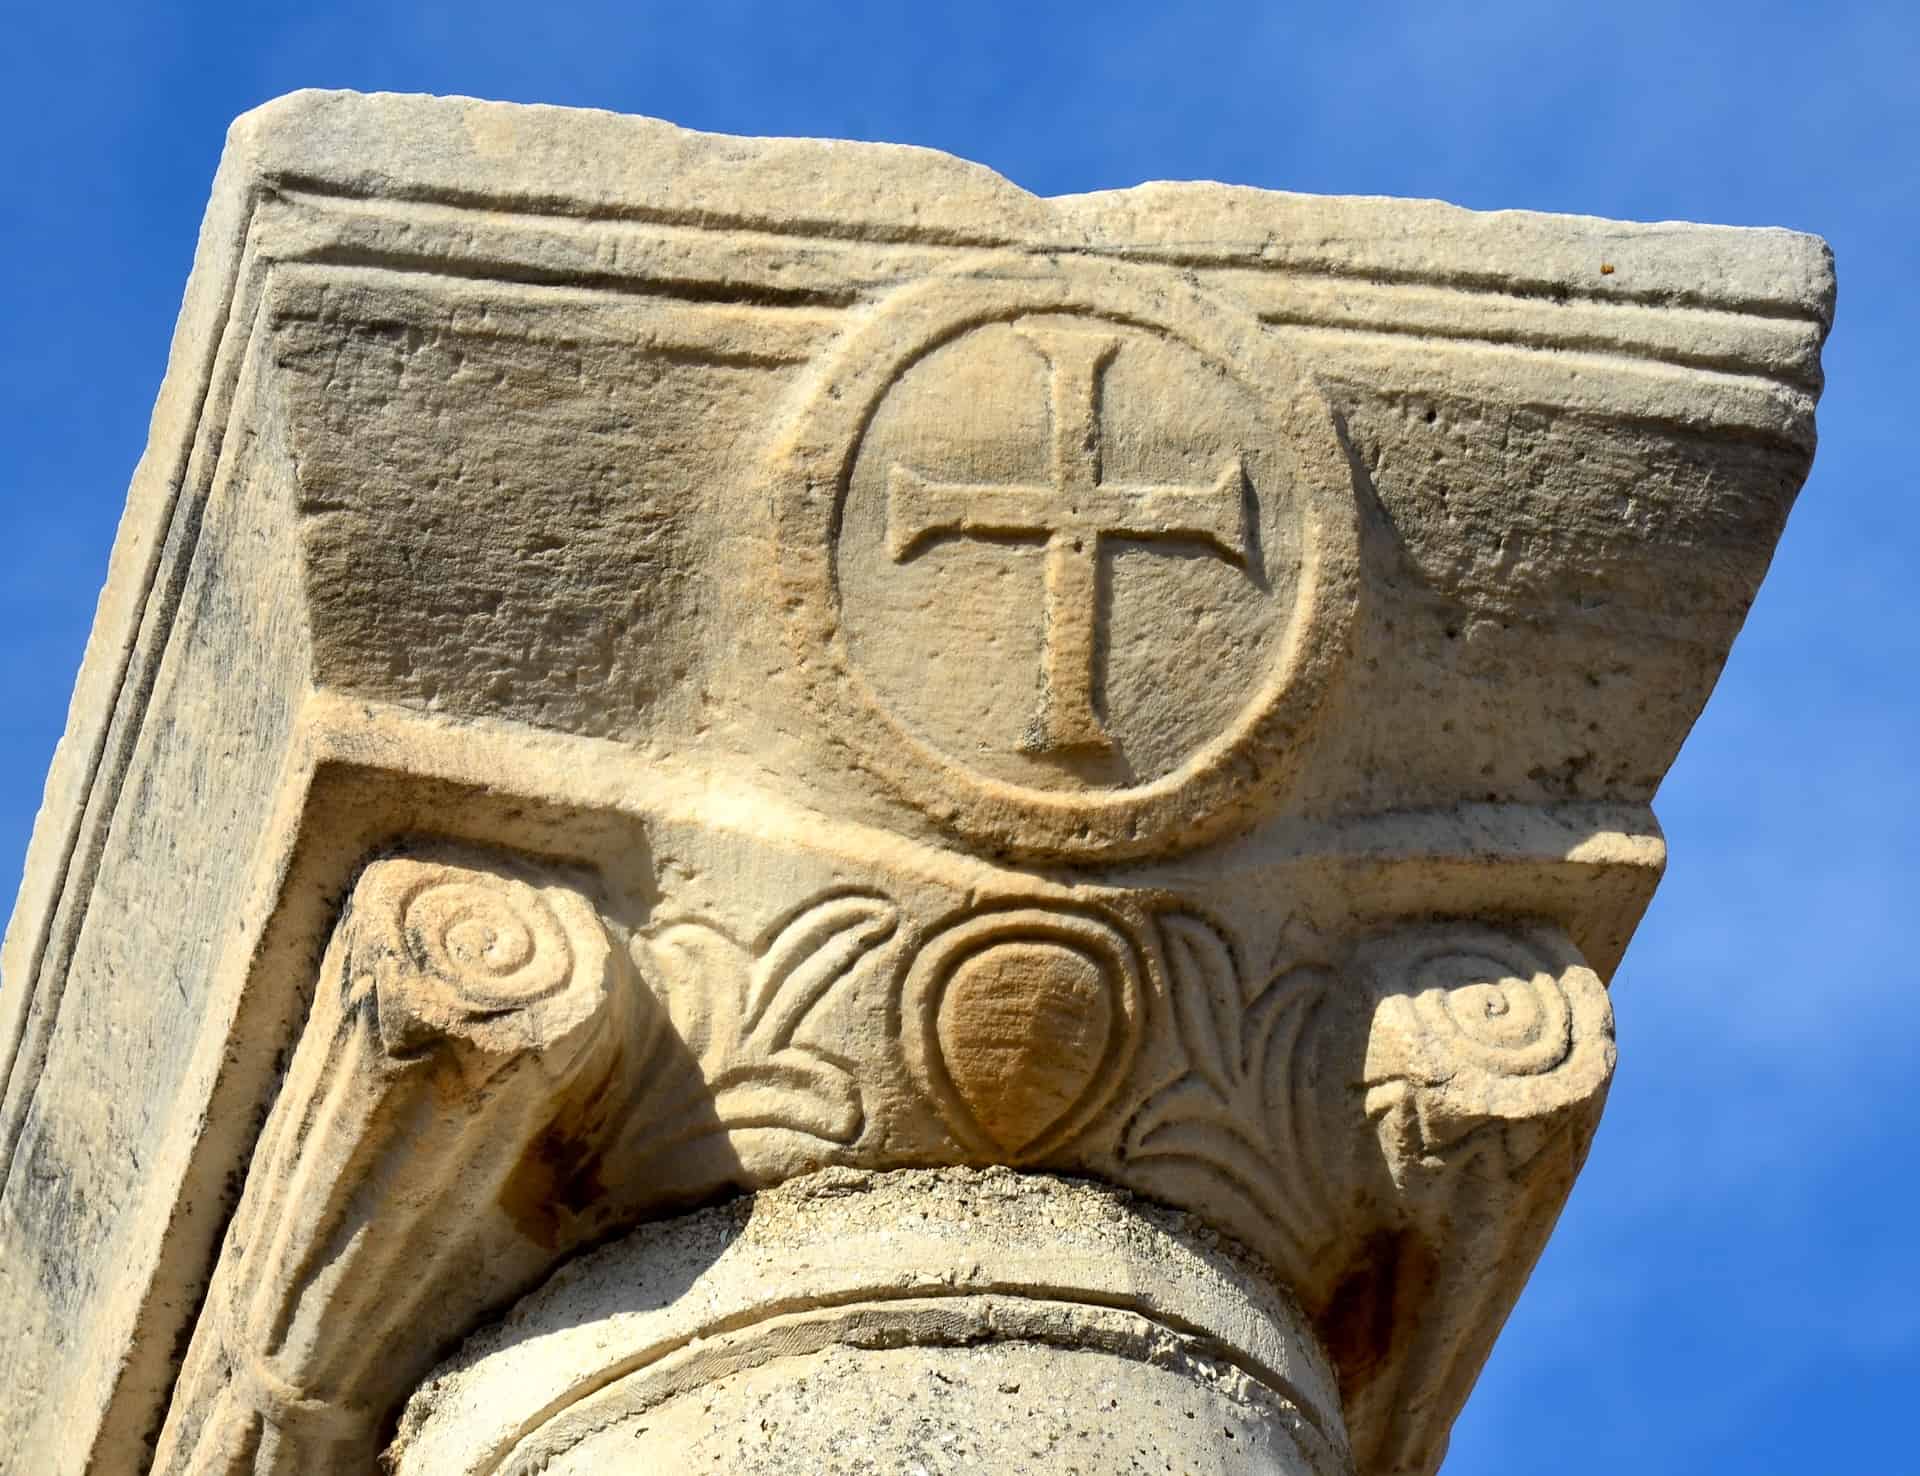 Column capital with a cross